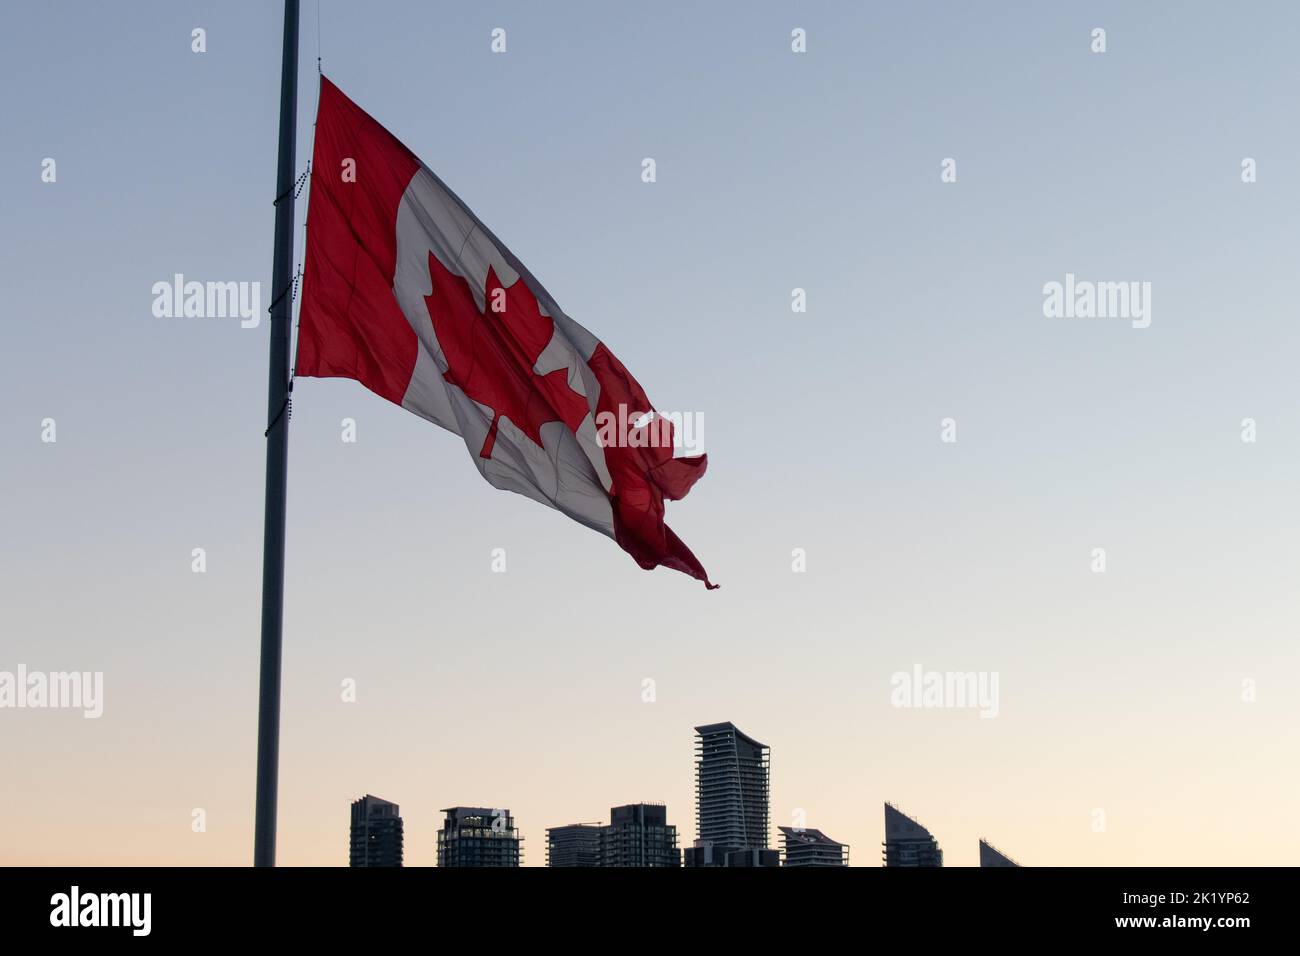 Un grand drapeau canadien est vu tôt le matin par temps clair, près d'un horizon moderne. Banque D'Images